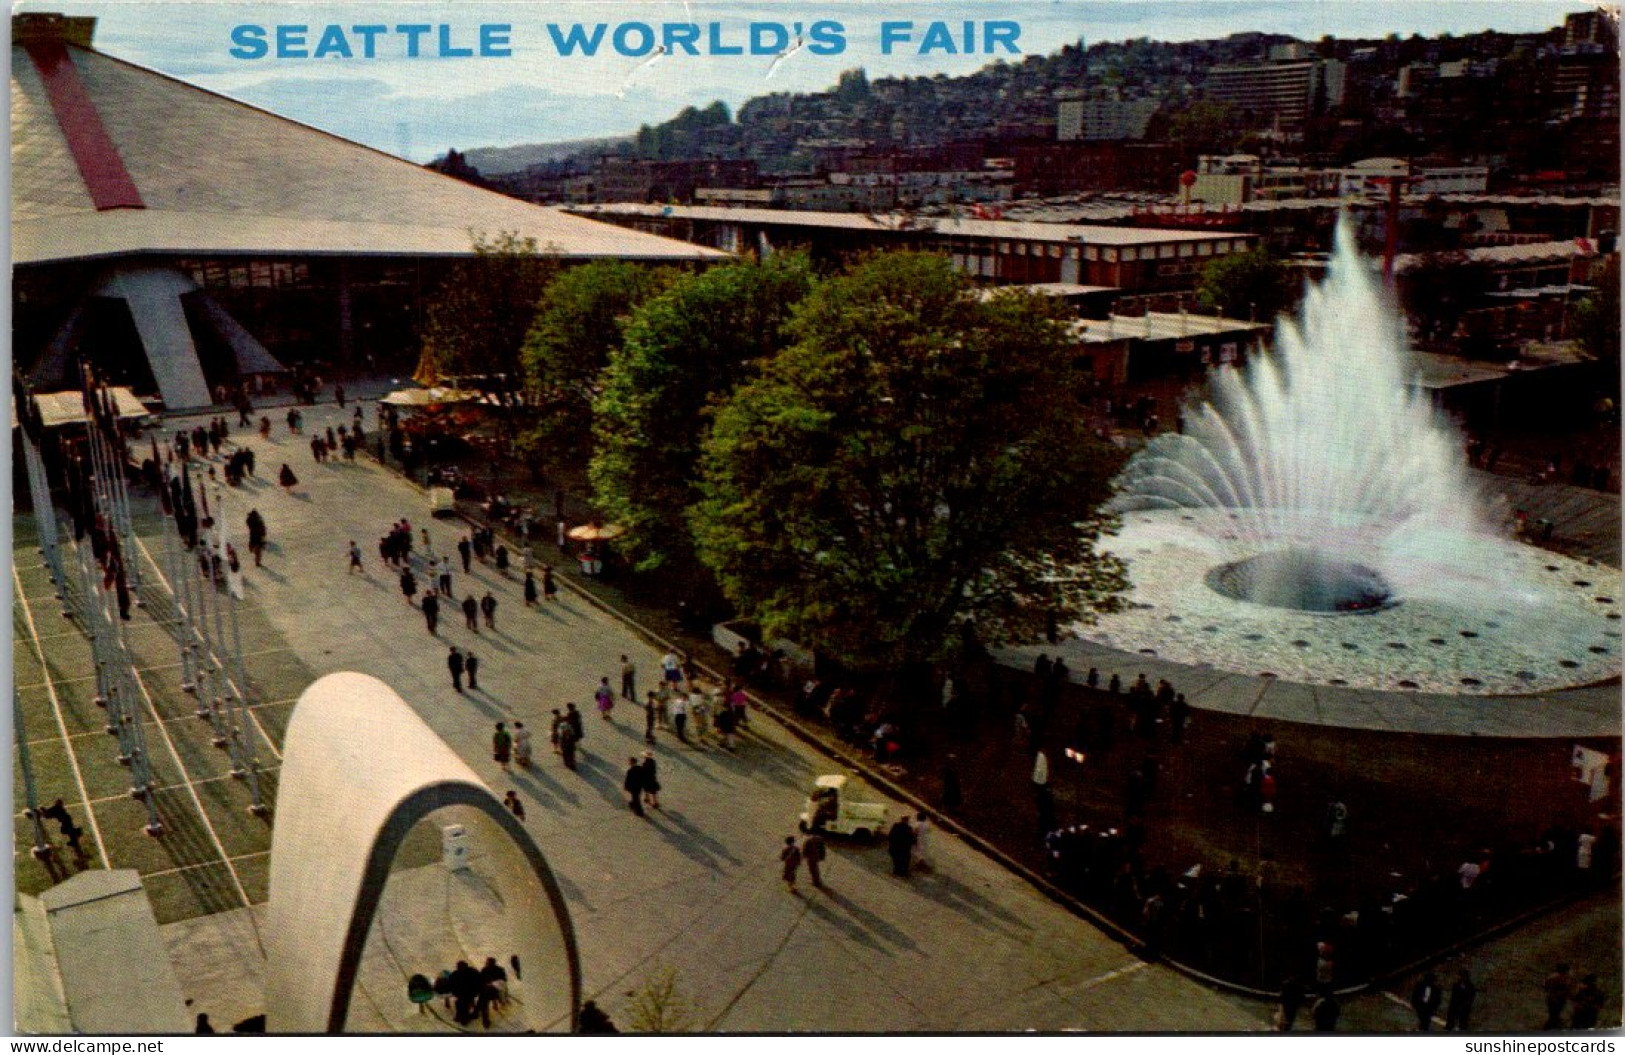 Washington Seattle World's Fair International Fountain - Seattle